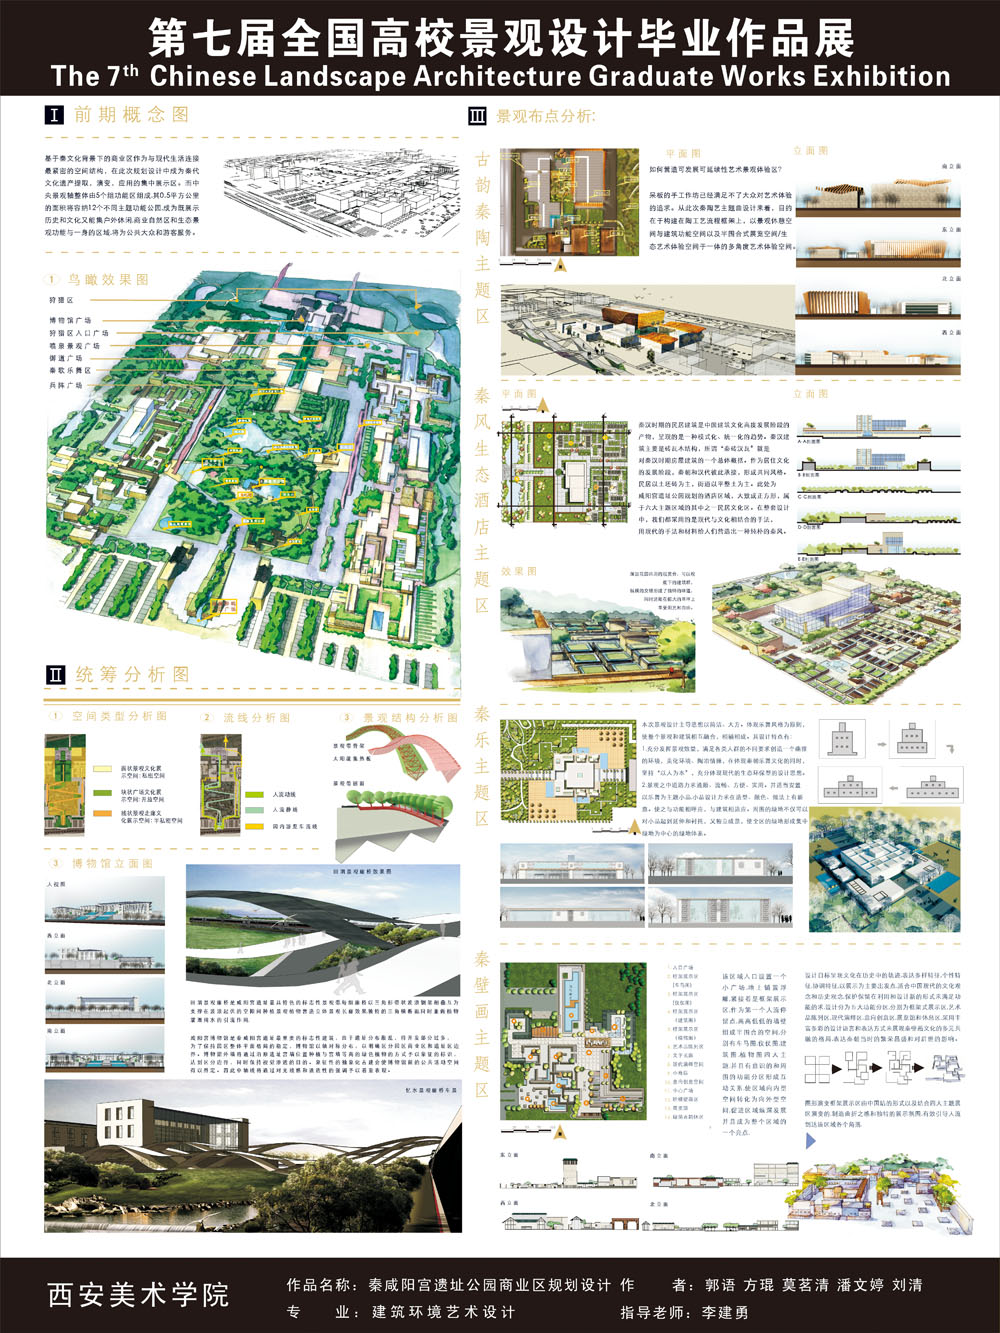 秦咸阳宫遗址公园商业区规划设计-2